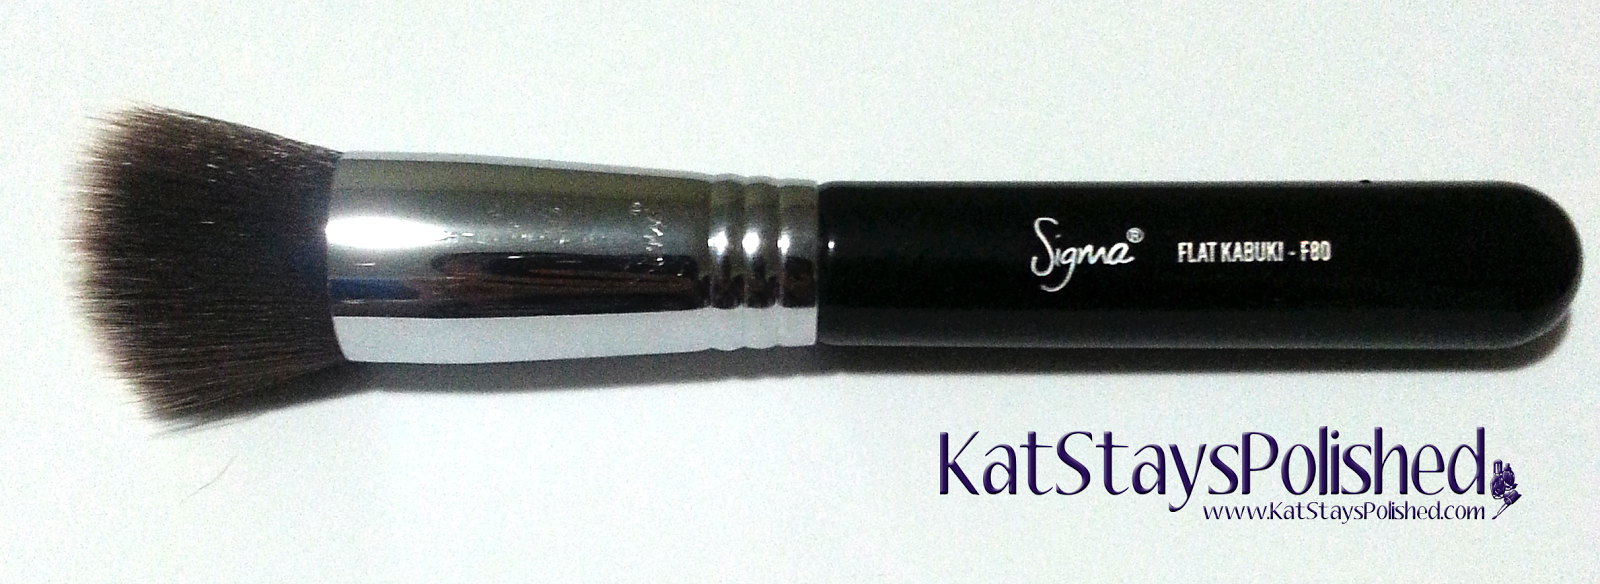 Sigma F80 Flat Kabuki Brush | Kat Stays Polished